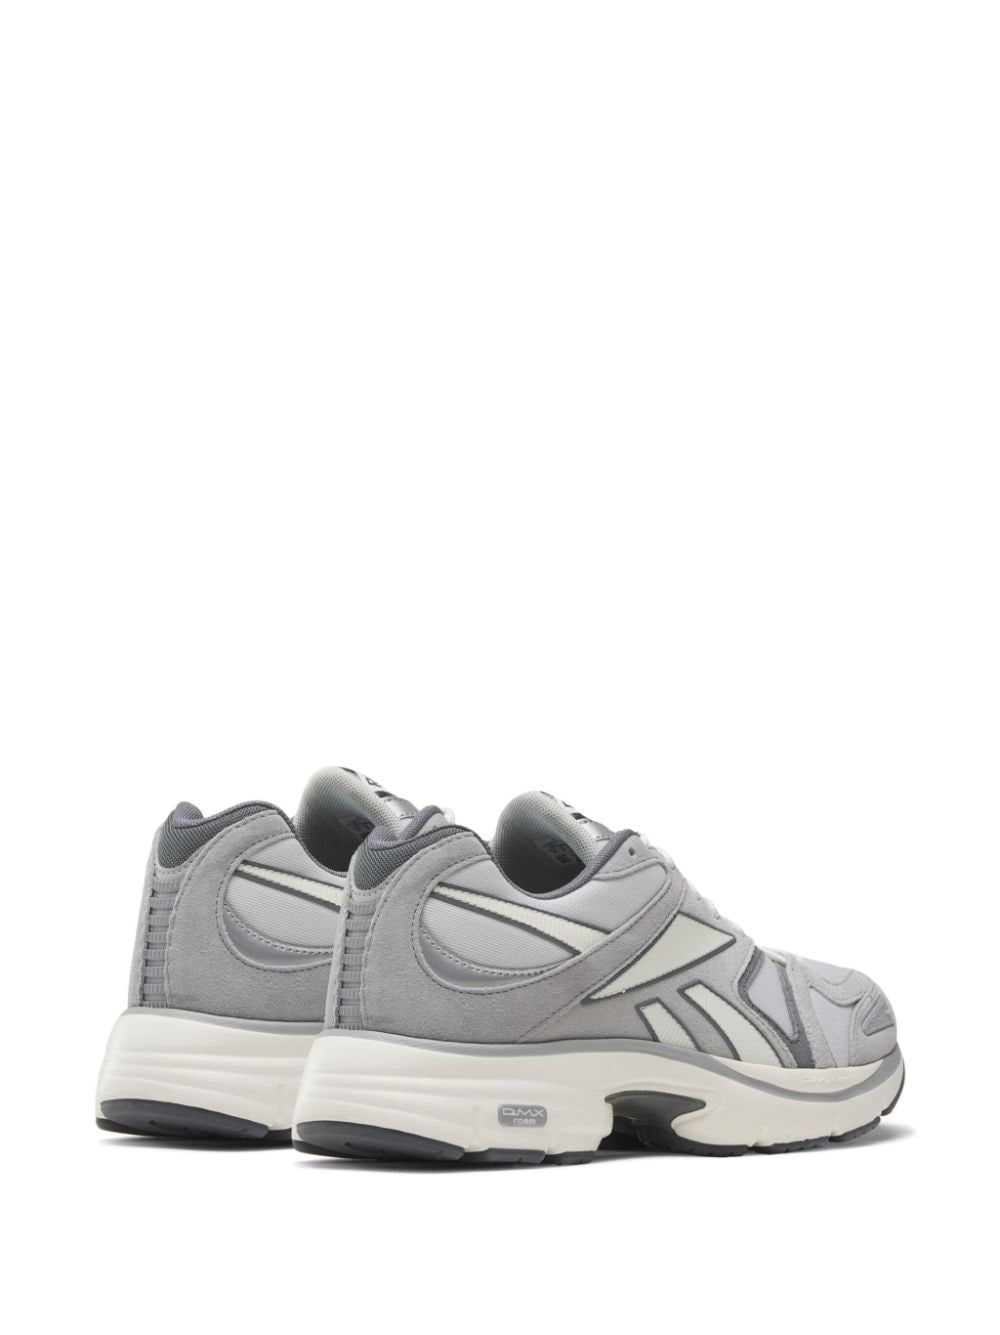 Shop Reebok Premier Road Plus Vi Sneakers In Grey